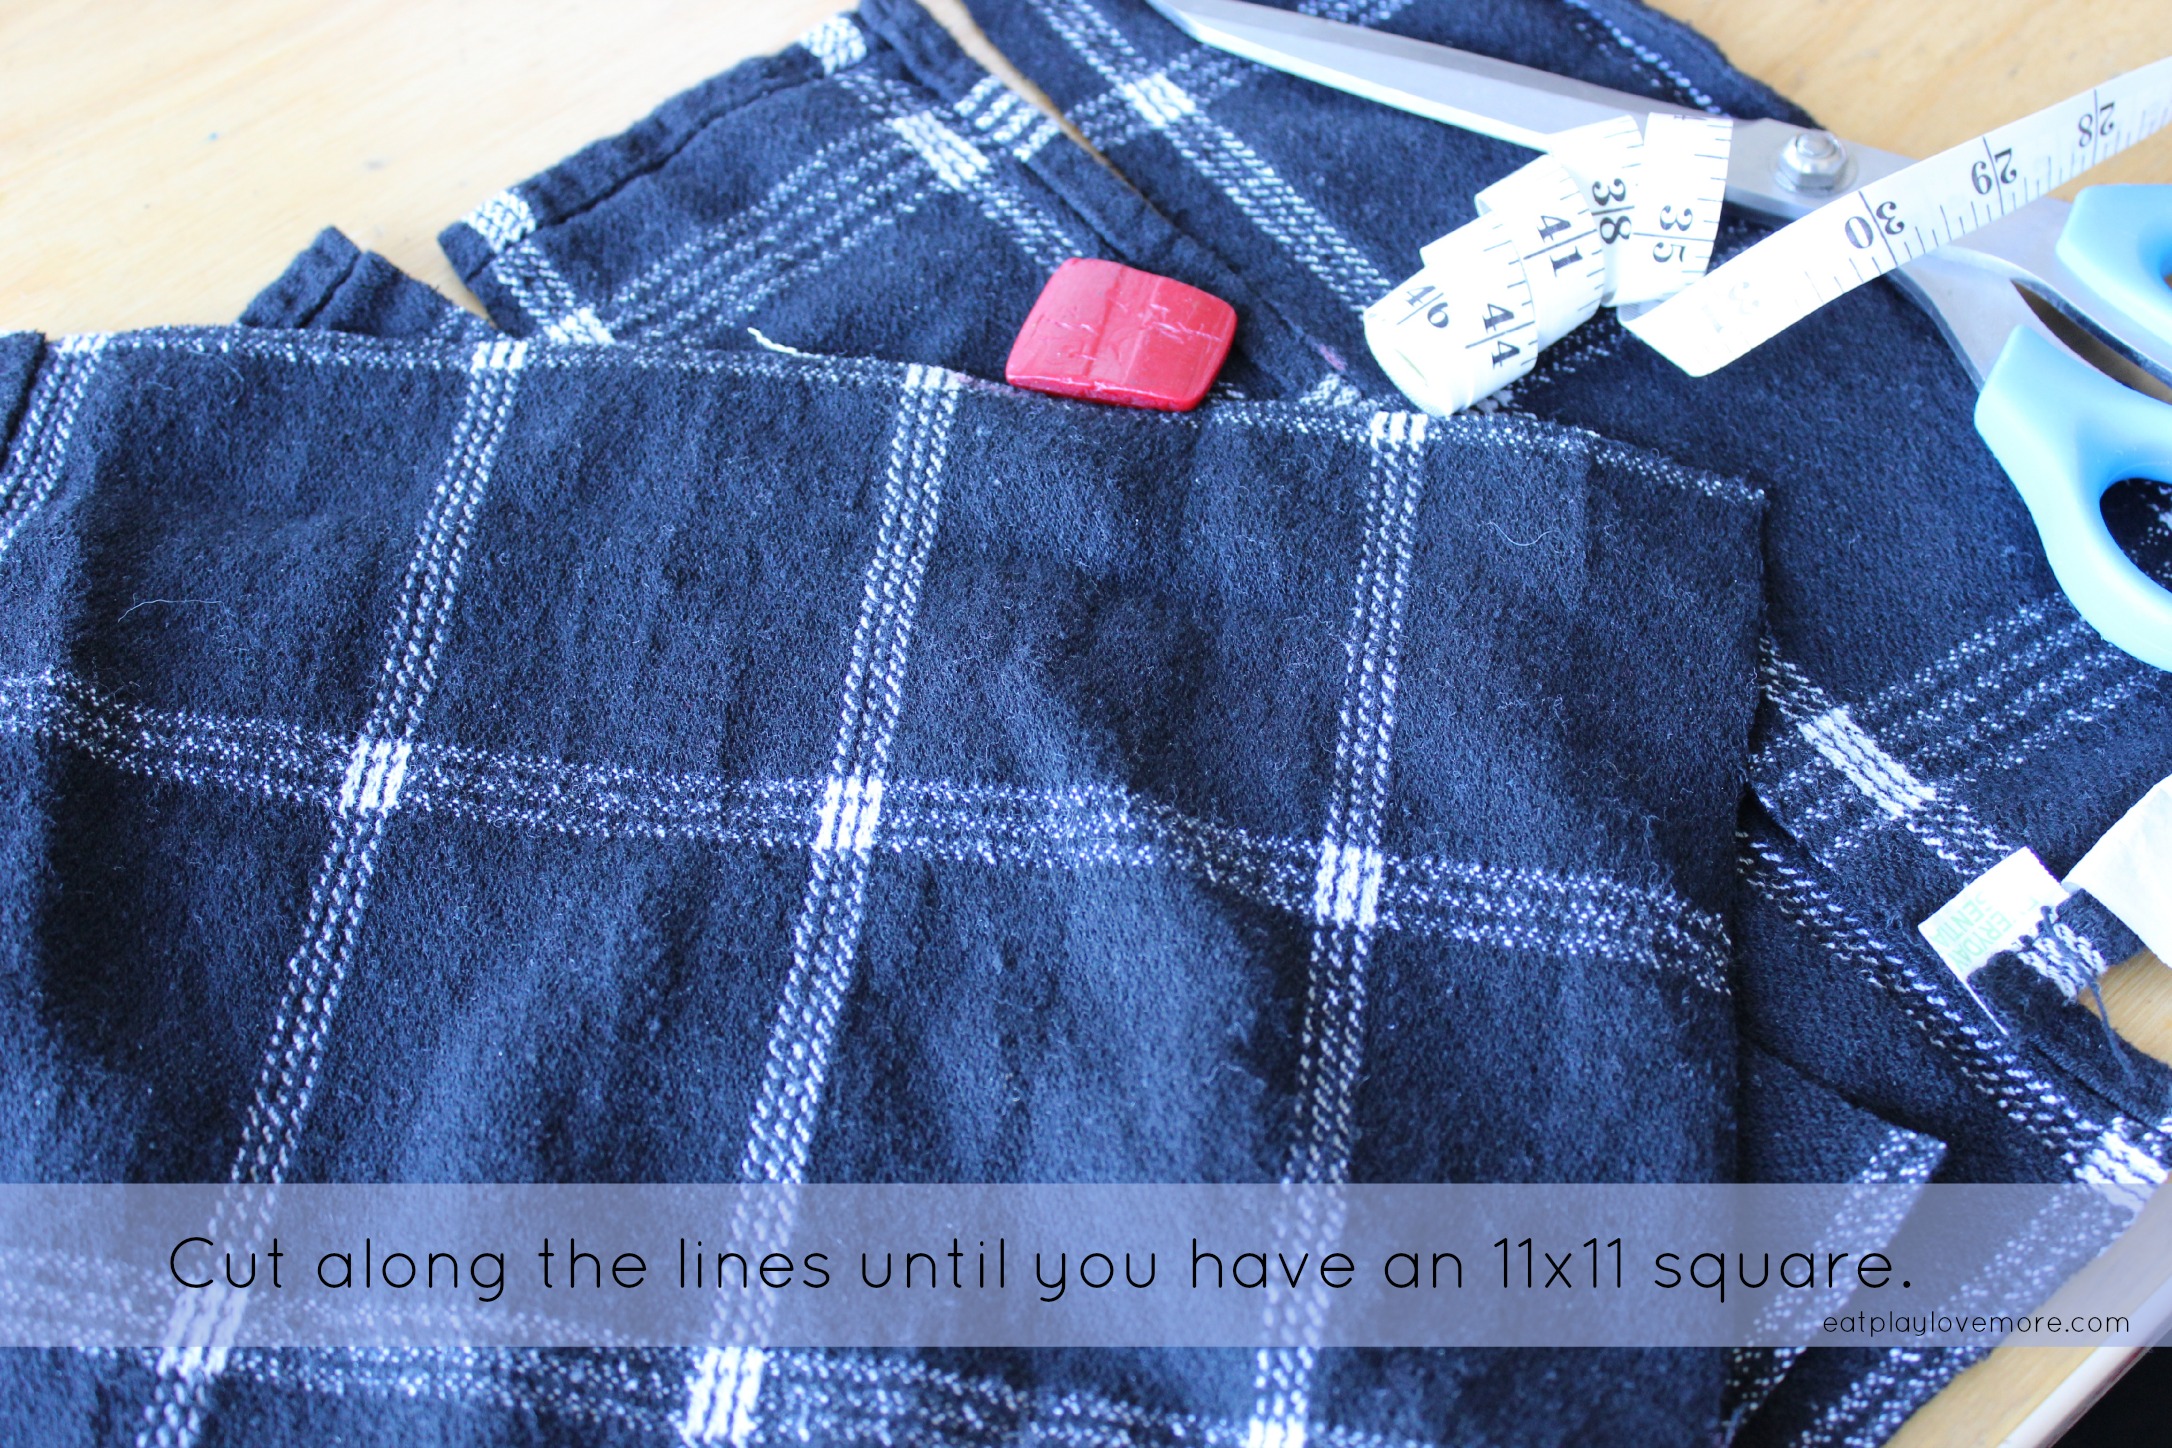 Reusable cloth napkins for everyday use + FREE printable tag - Lansdowne  Life